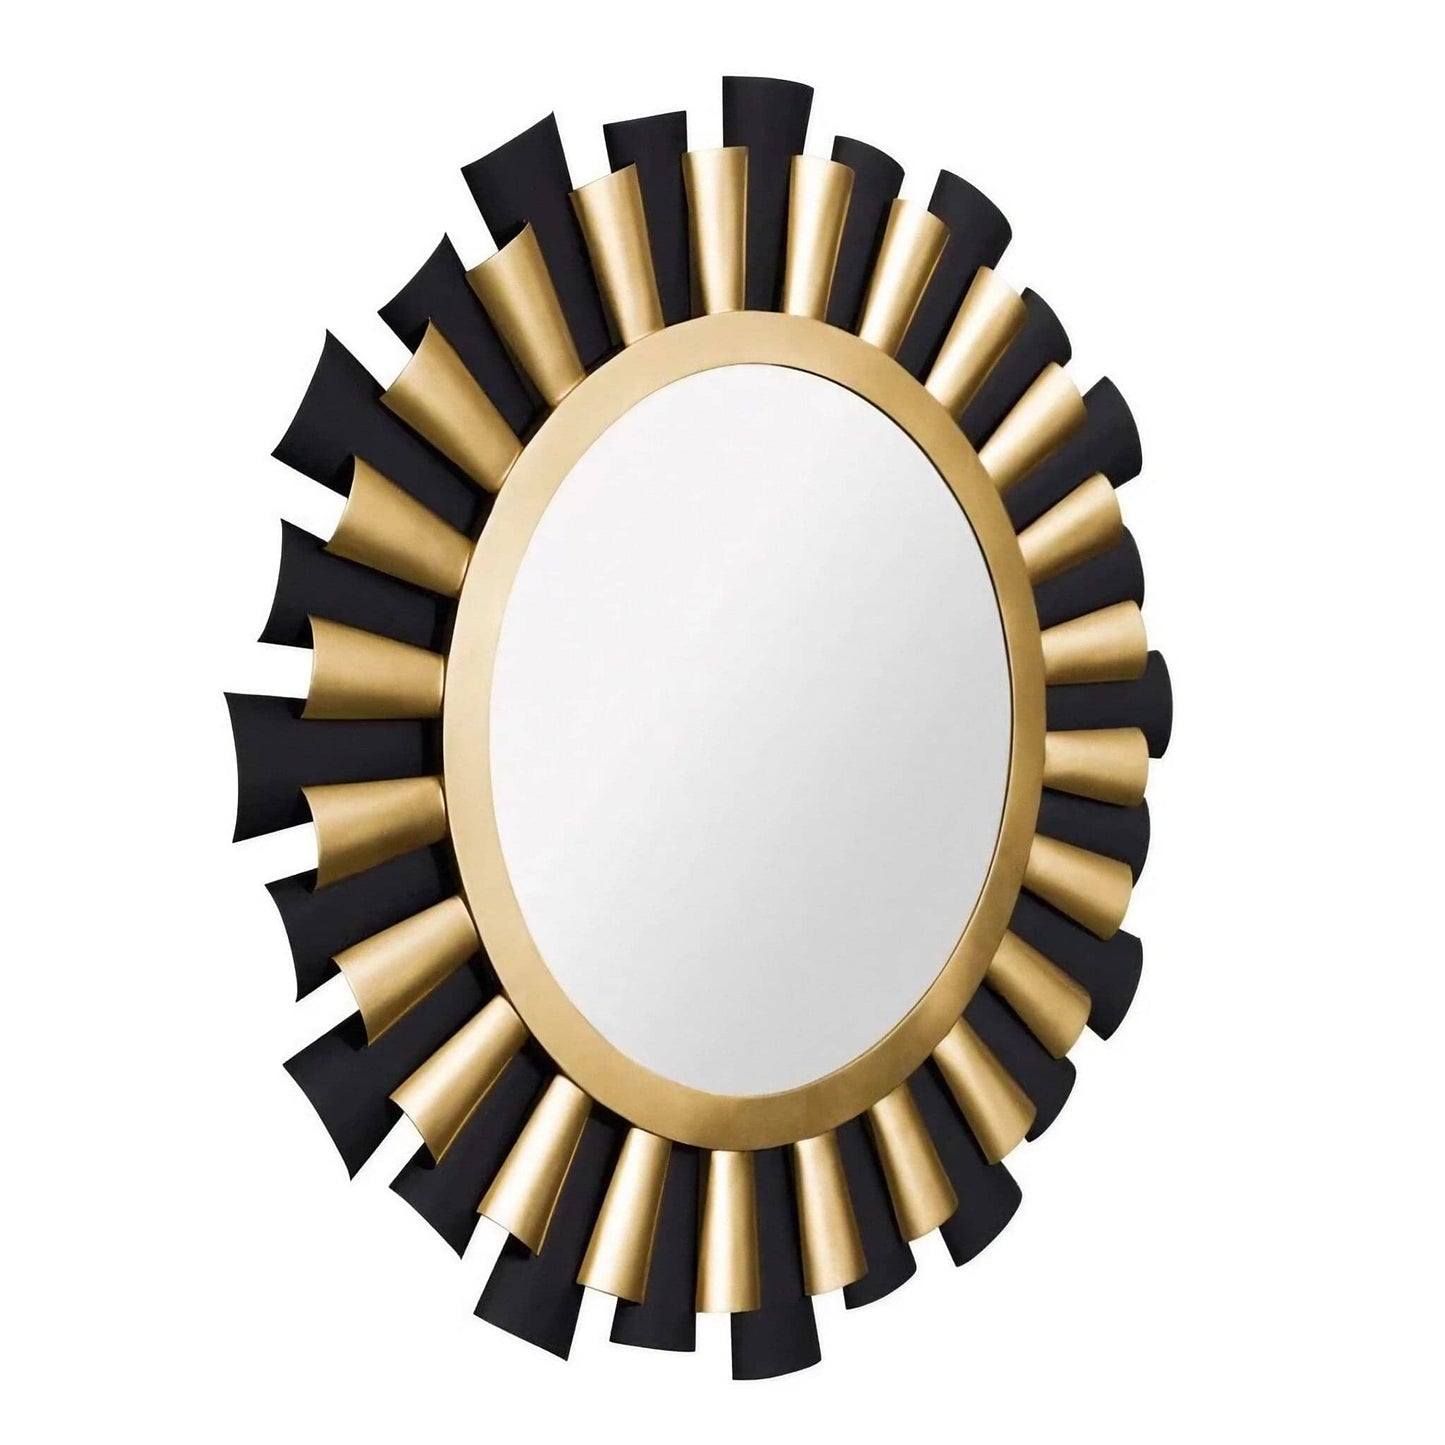 Varaluz Daphne 36-inch Round Mirror—Matte Black/French Gold Wall Mirror, Round Mirror, Decorative Mirror Varaluz 